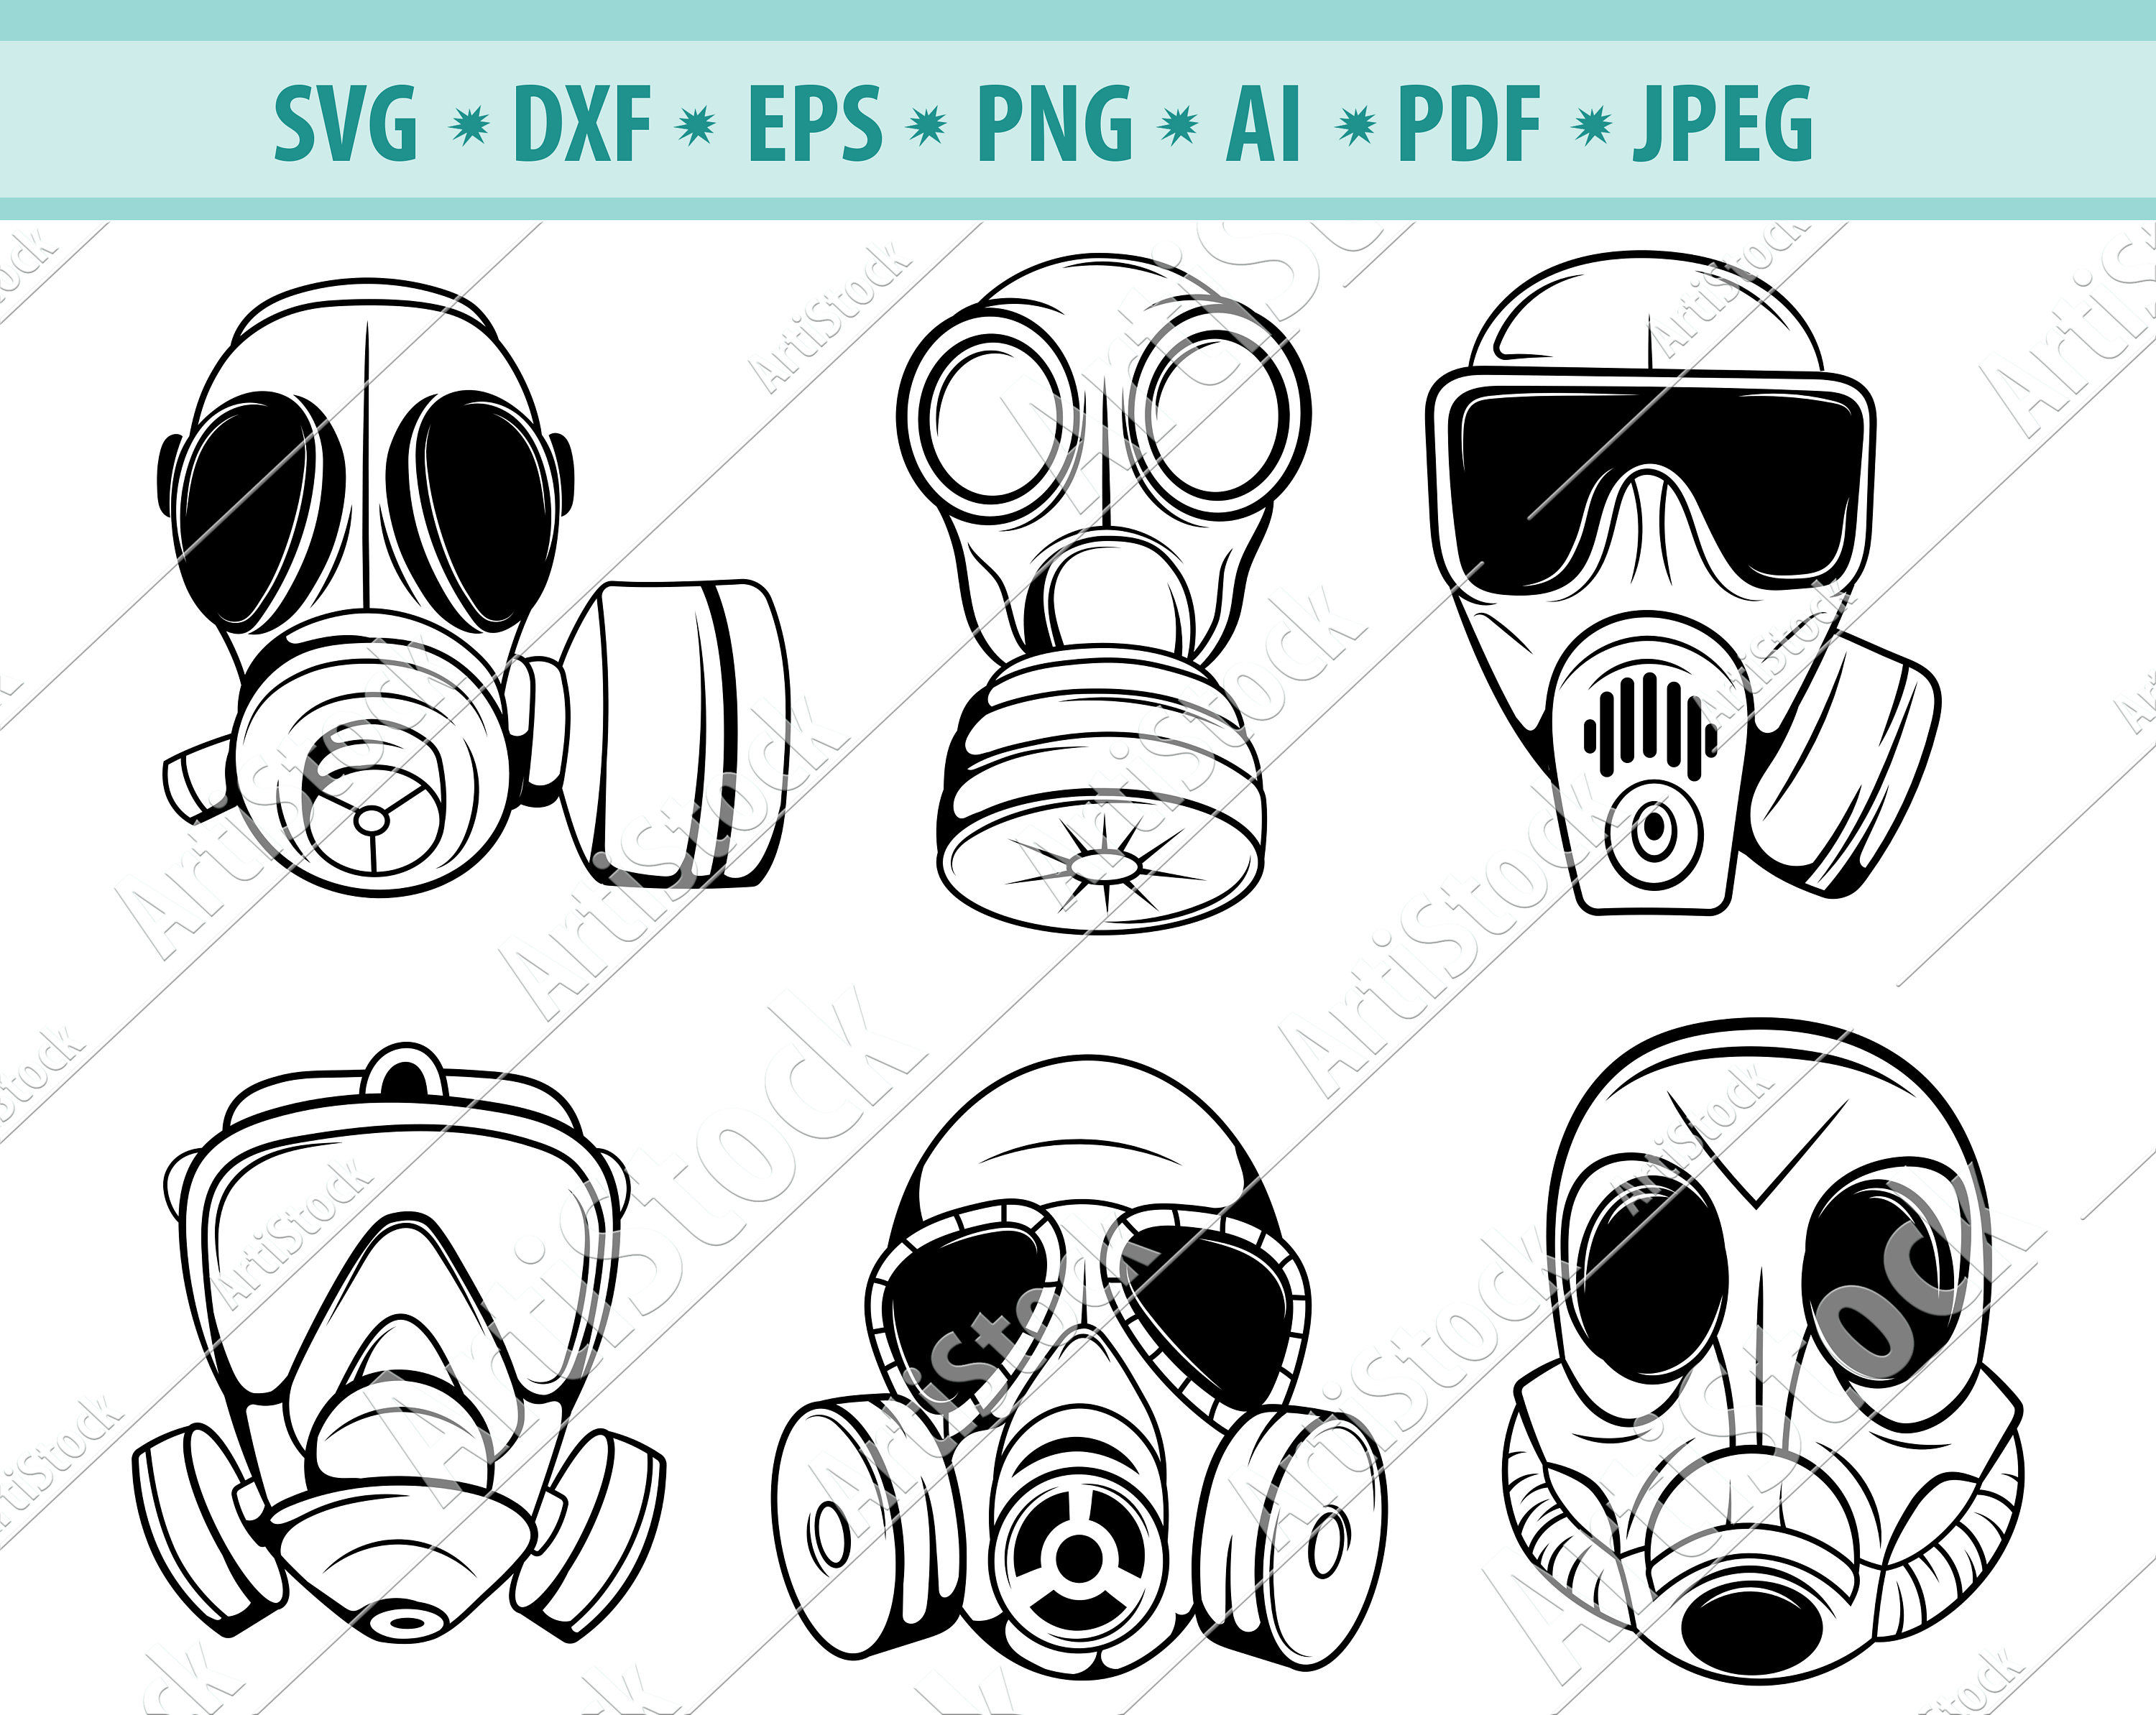 Gas Mask Svg, Mask Svg, Protective Mask Svg, Civilian Gas Mask Svg,  Industrial Mask Svg, Safety Svg, Respirator Mask Svg, Svg Cut File, Png 